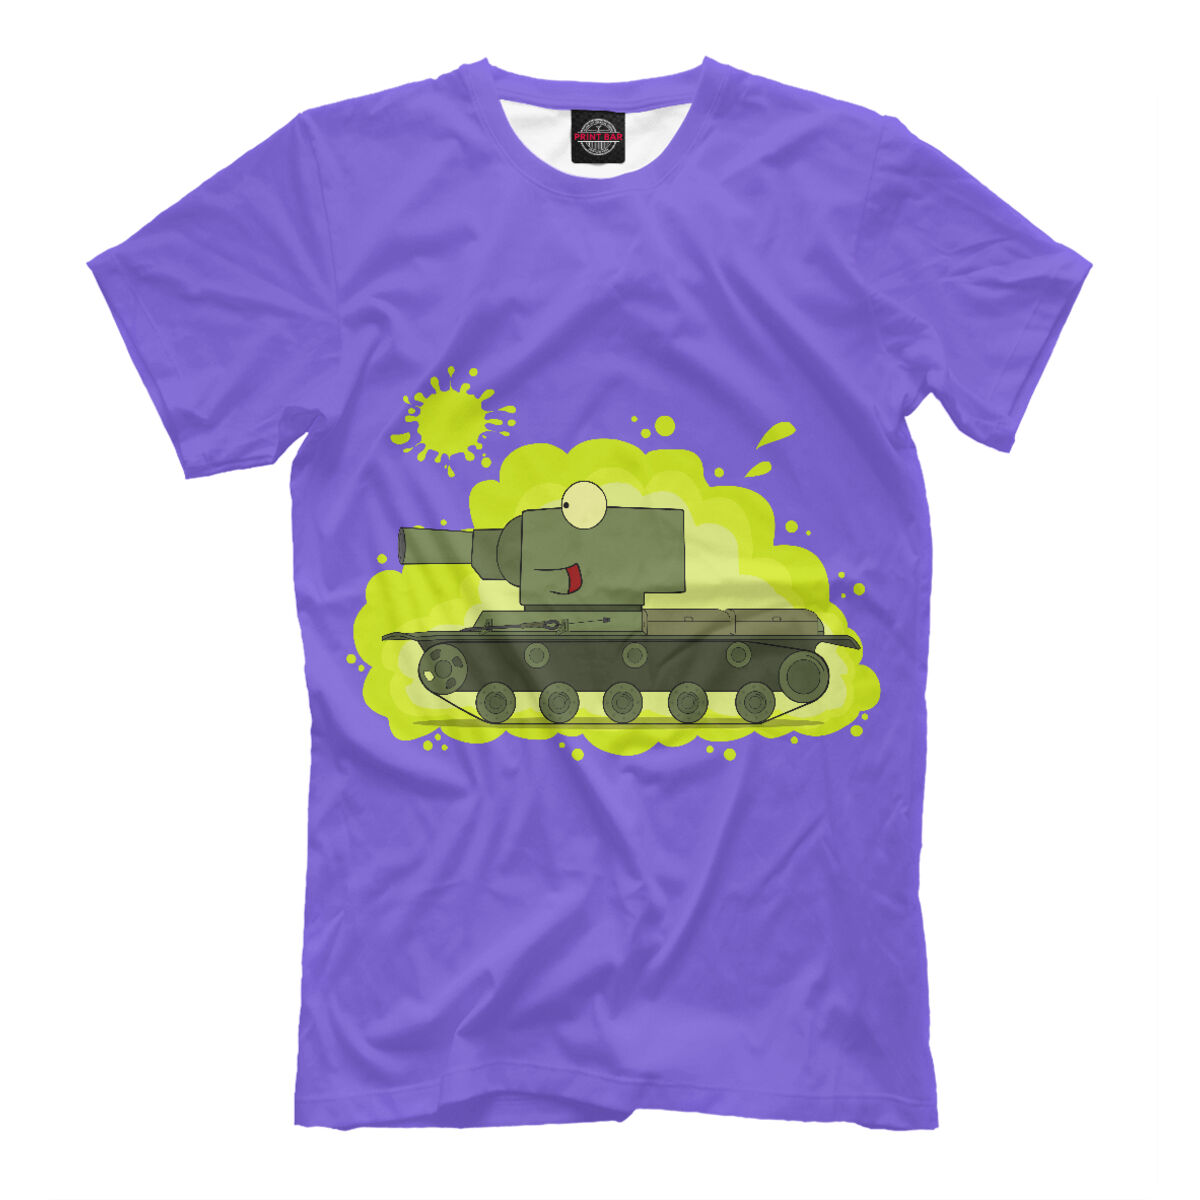 Мальчики танчики. Футболка танки кв 44. Футболка с танками. Футболка с танком для мальчиков. Футболка с танками детская.